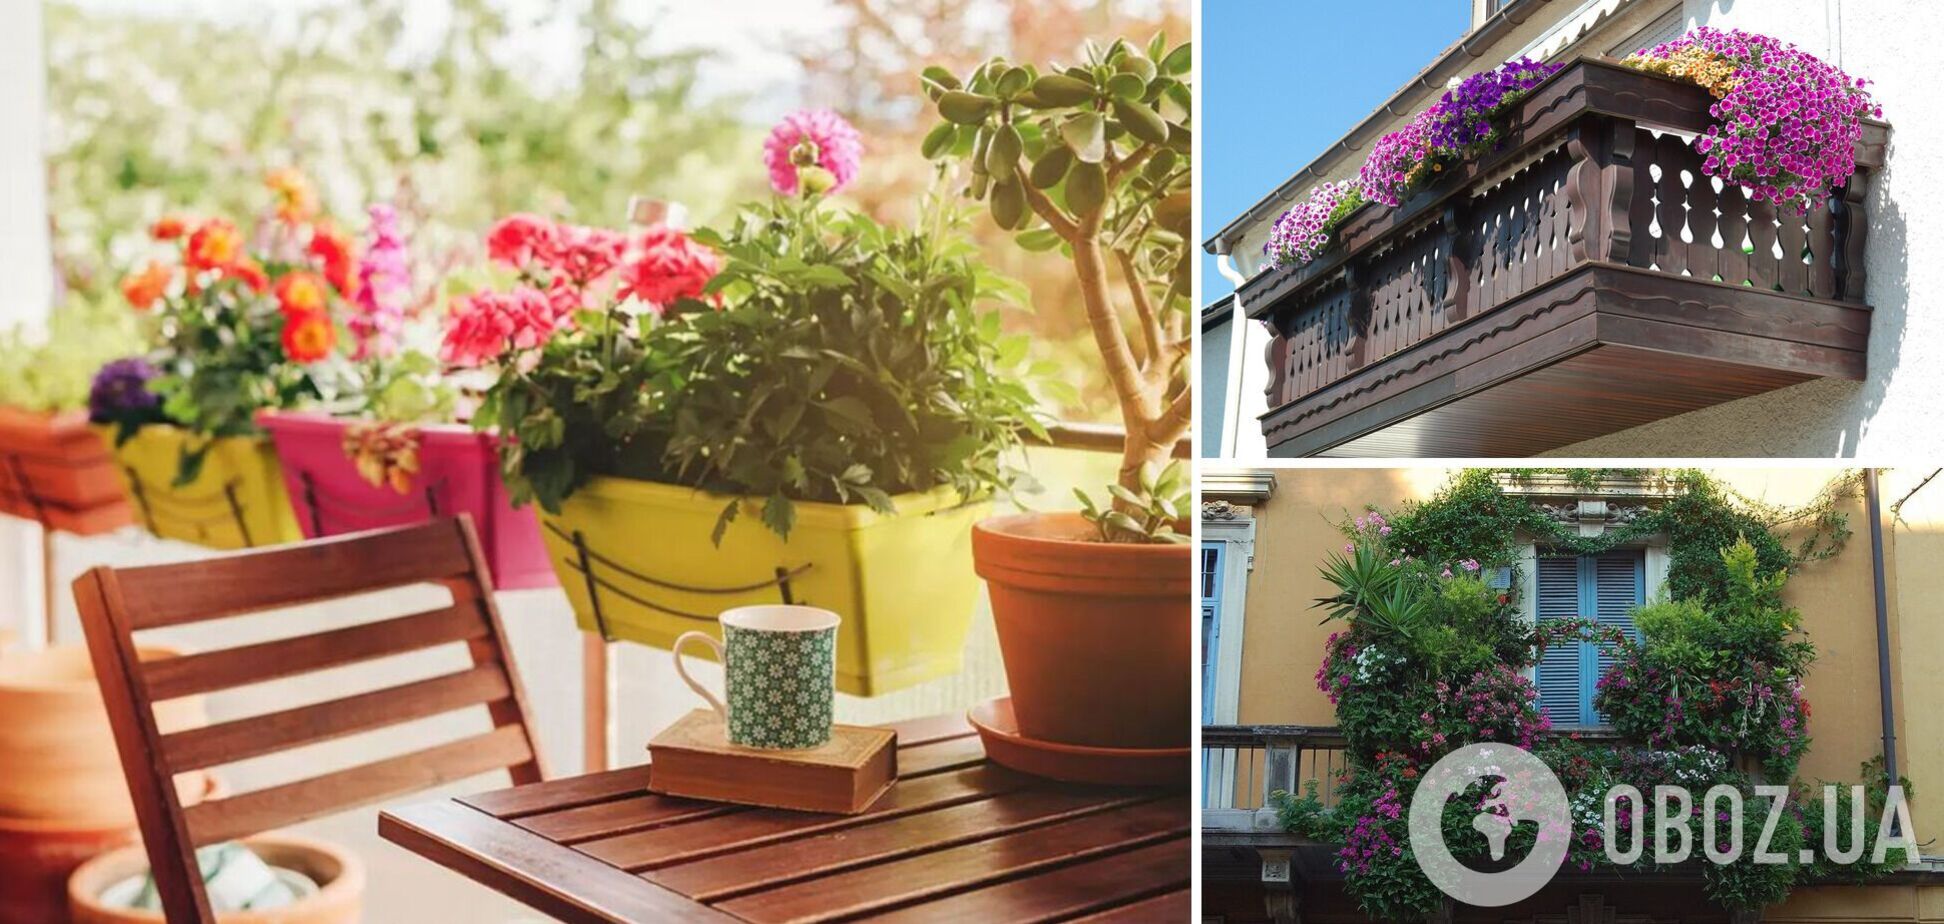 Які квіти обрати для балкона: заздритимуть всі сусіди